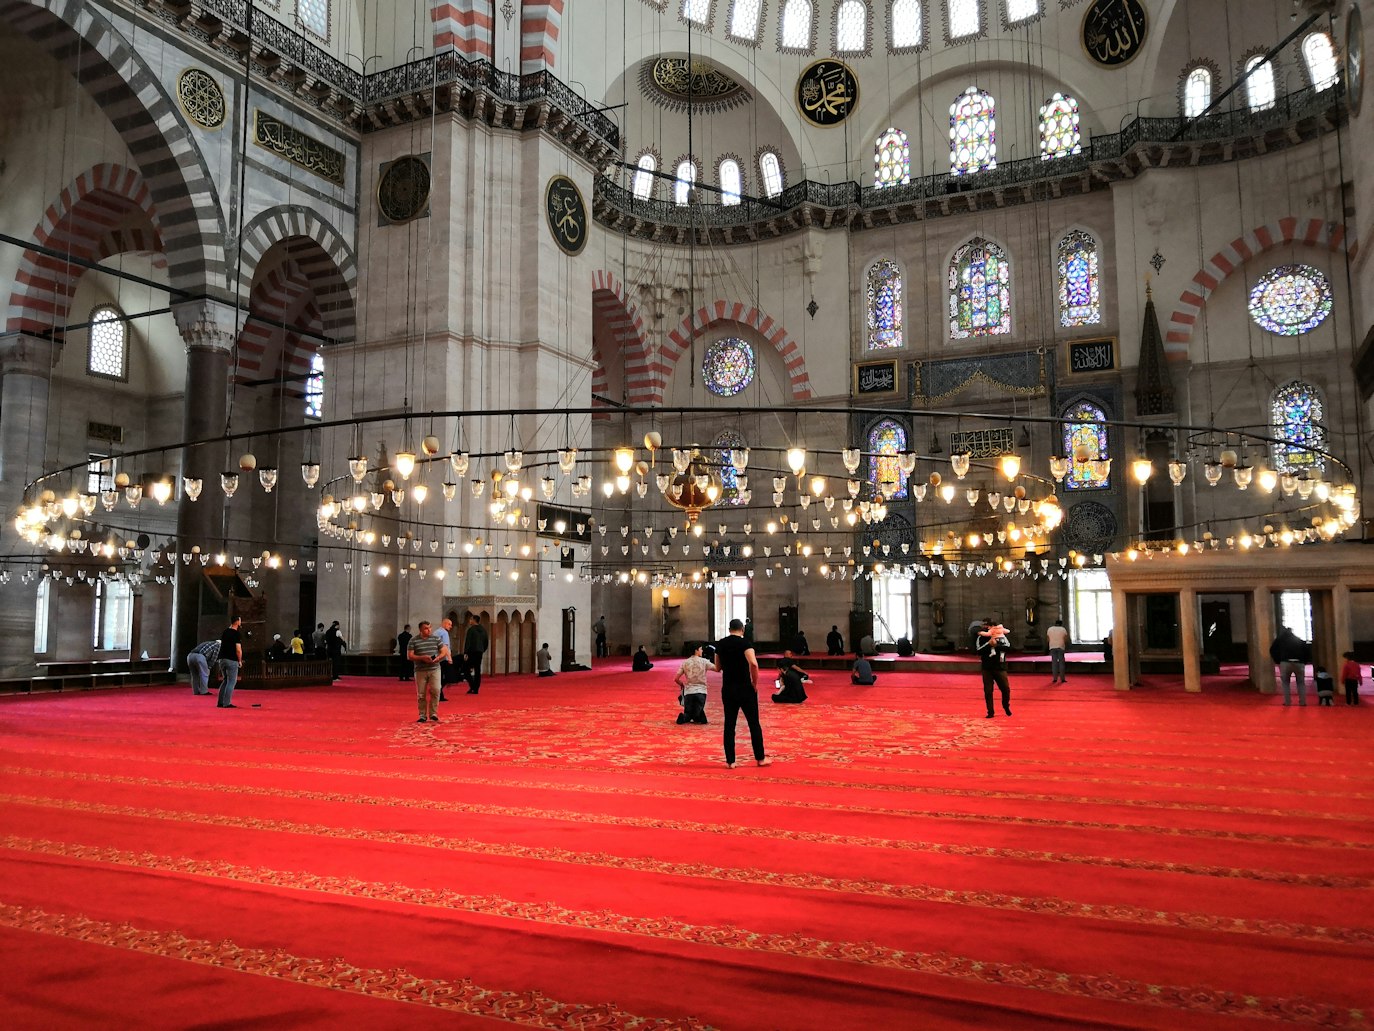 Mosque in Süleymaniye Cami, Istanbul, Turkey